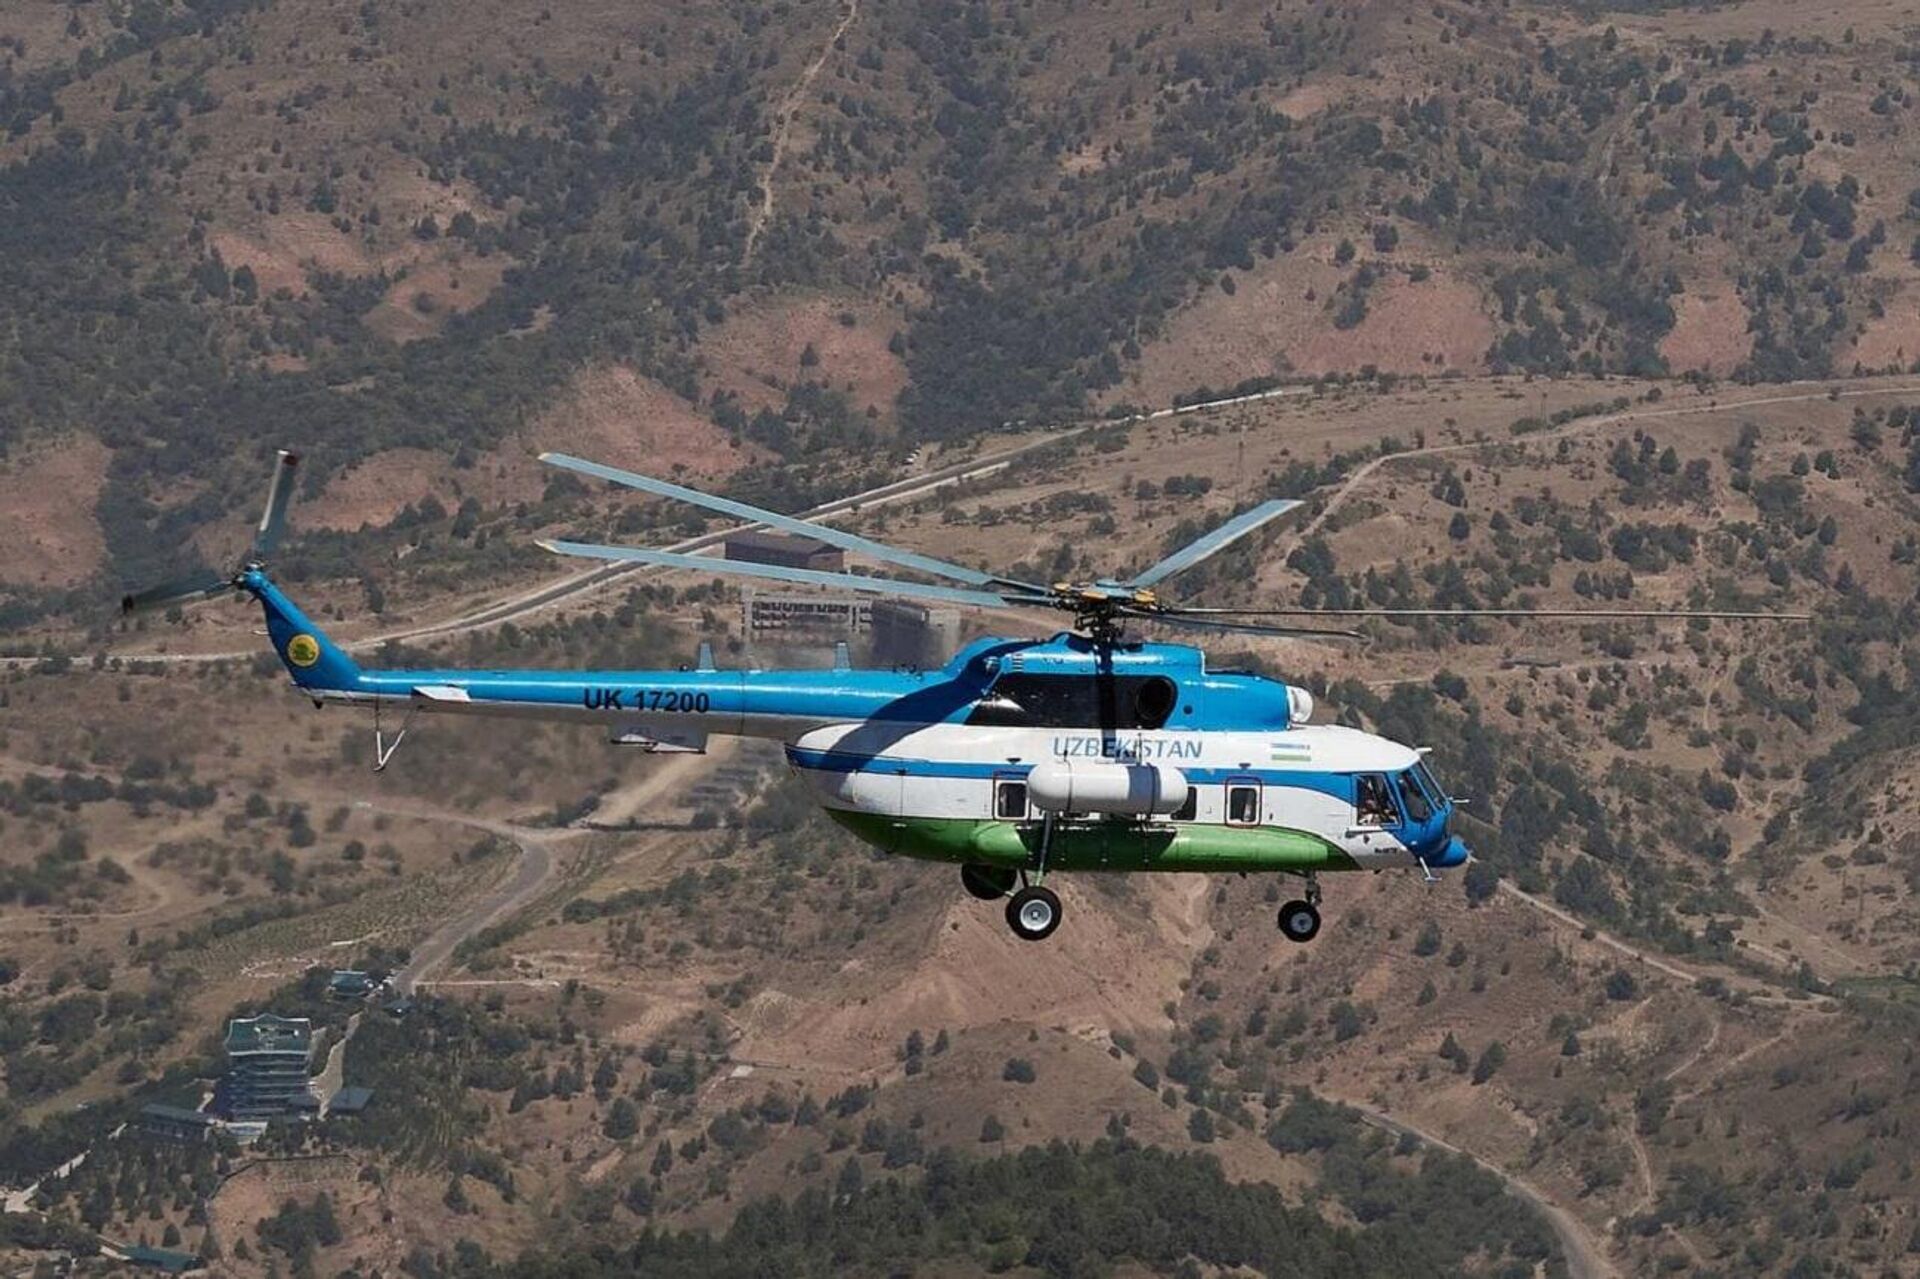 Uzbekistan Helicopters провел презентацию вертолетов Airbus H125 и Ми-8МТВ - Sputnik Узбекистан, 1920, 01.08.2021